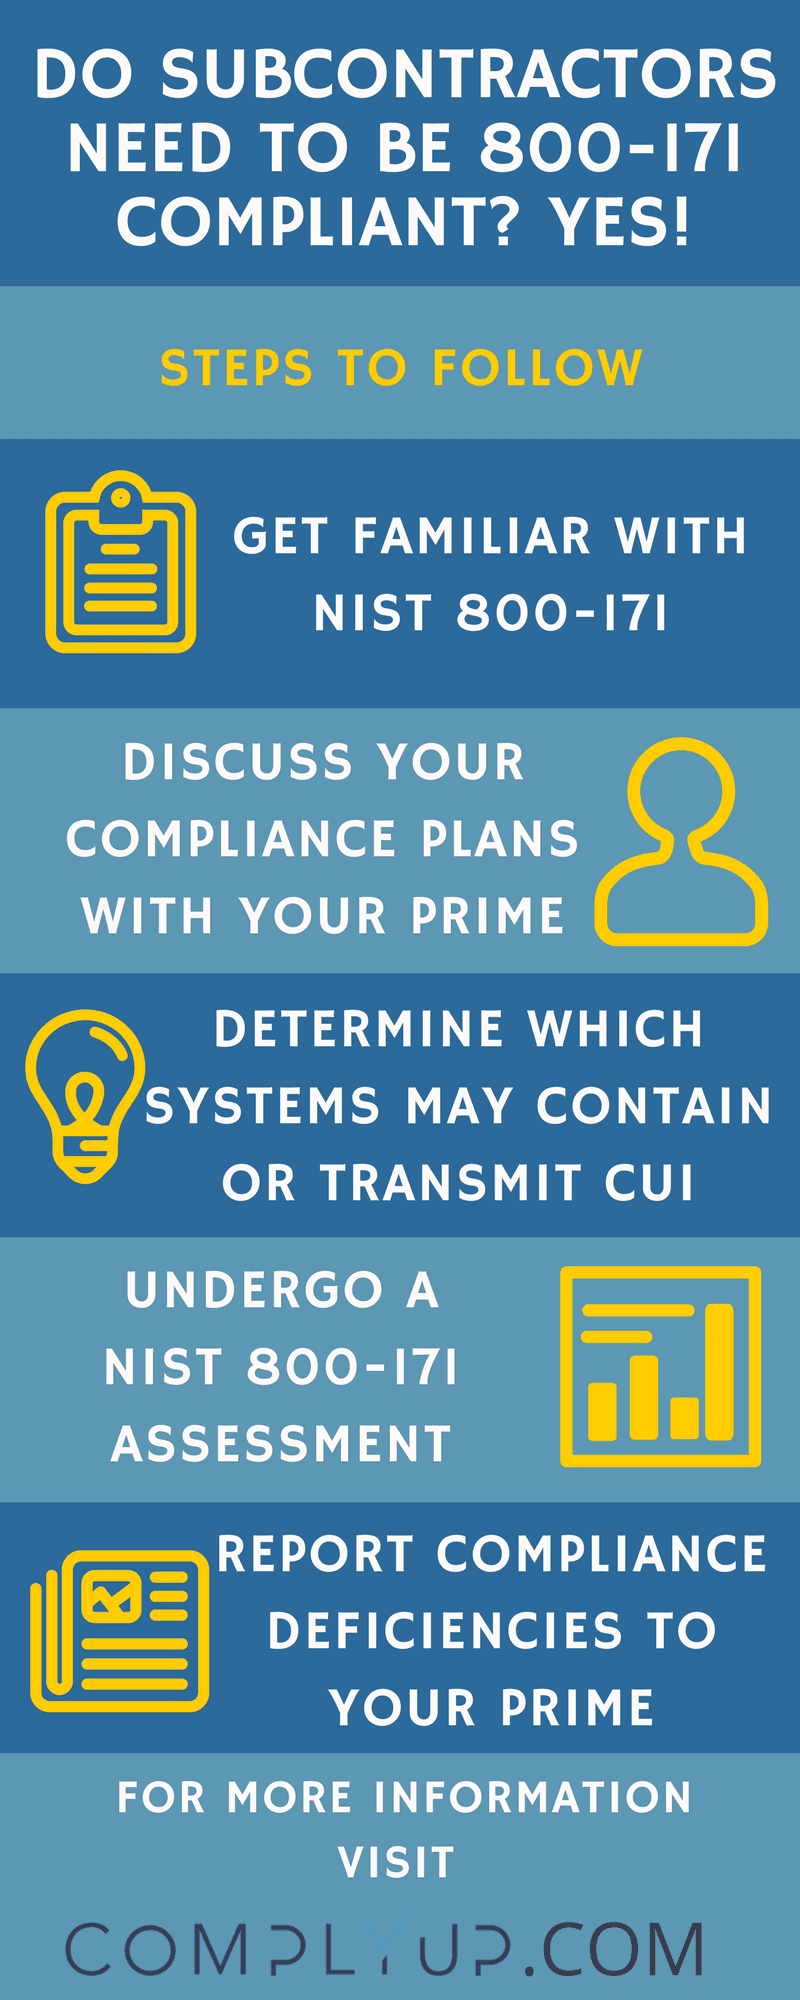 NIST 800-171 Subcontractor